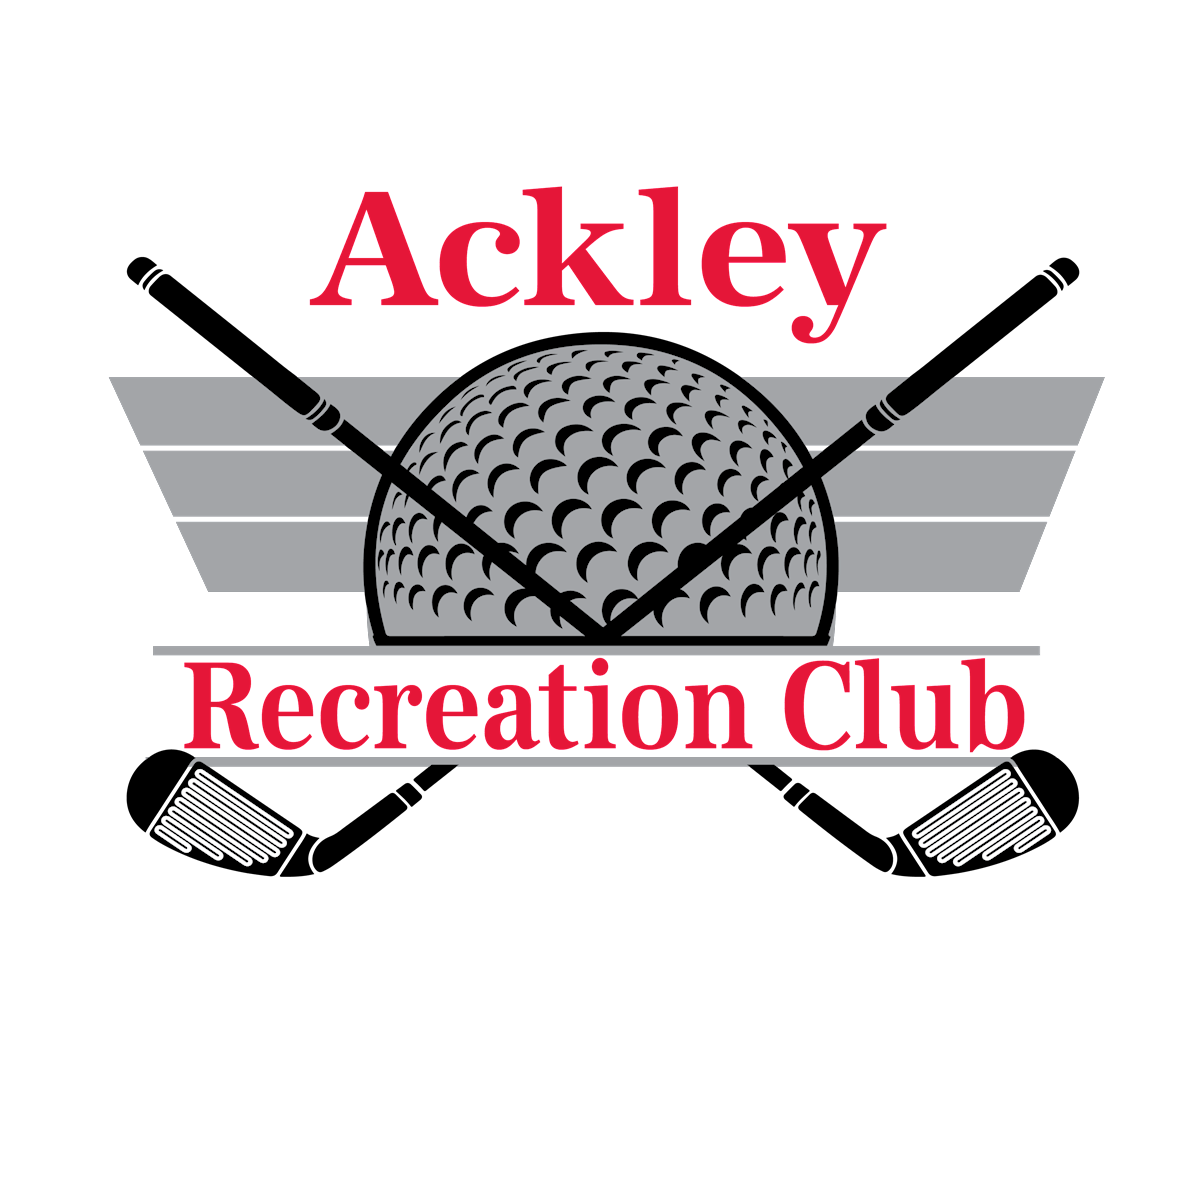 Ackley Recreation Club